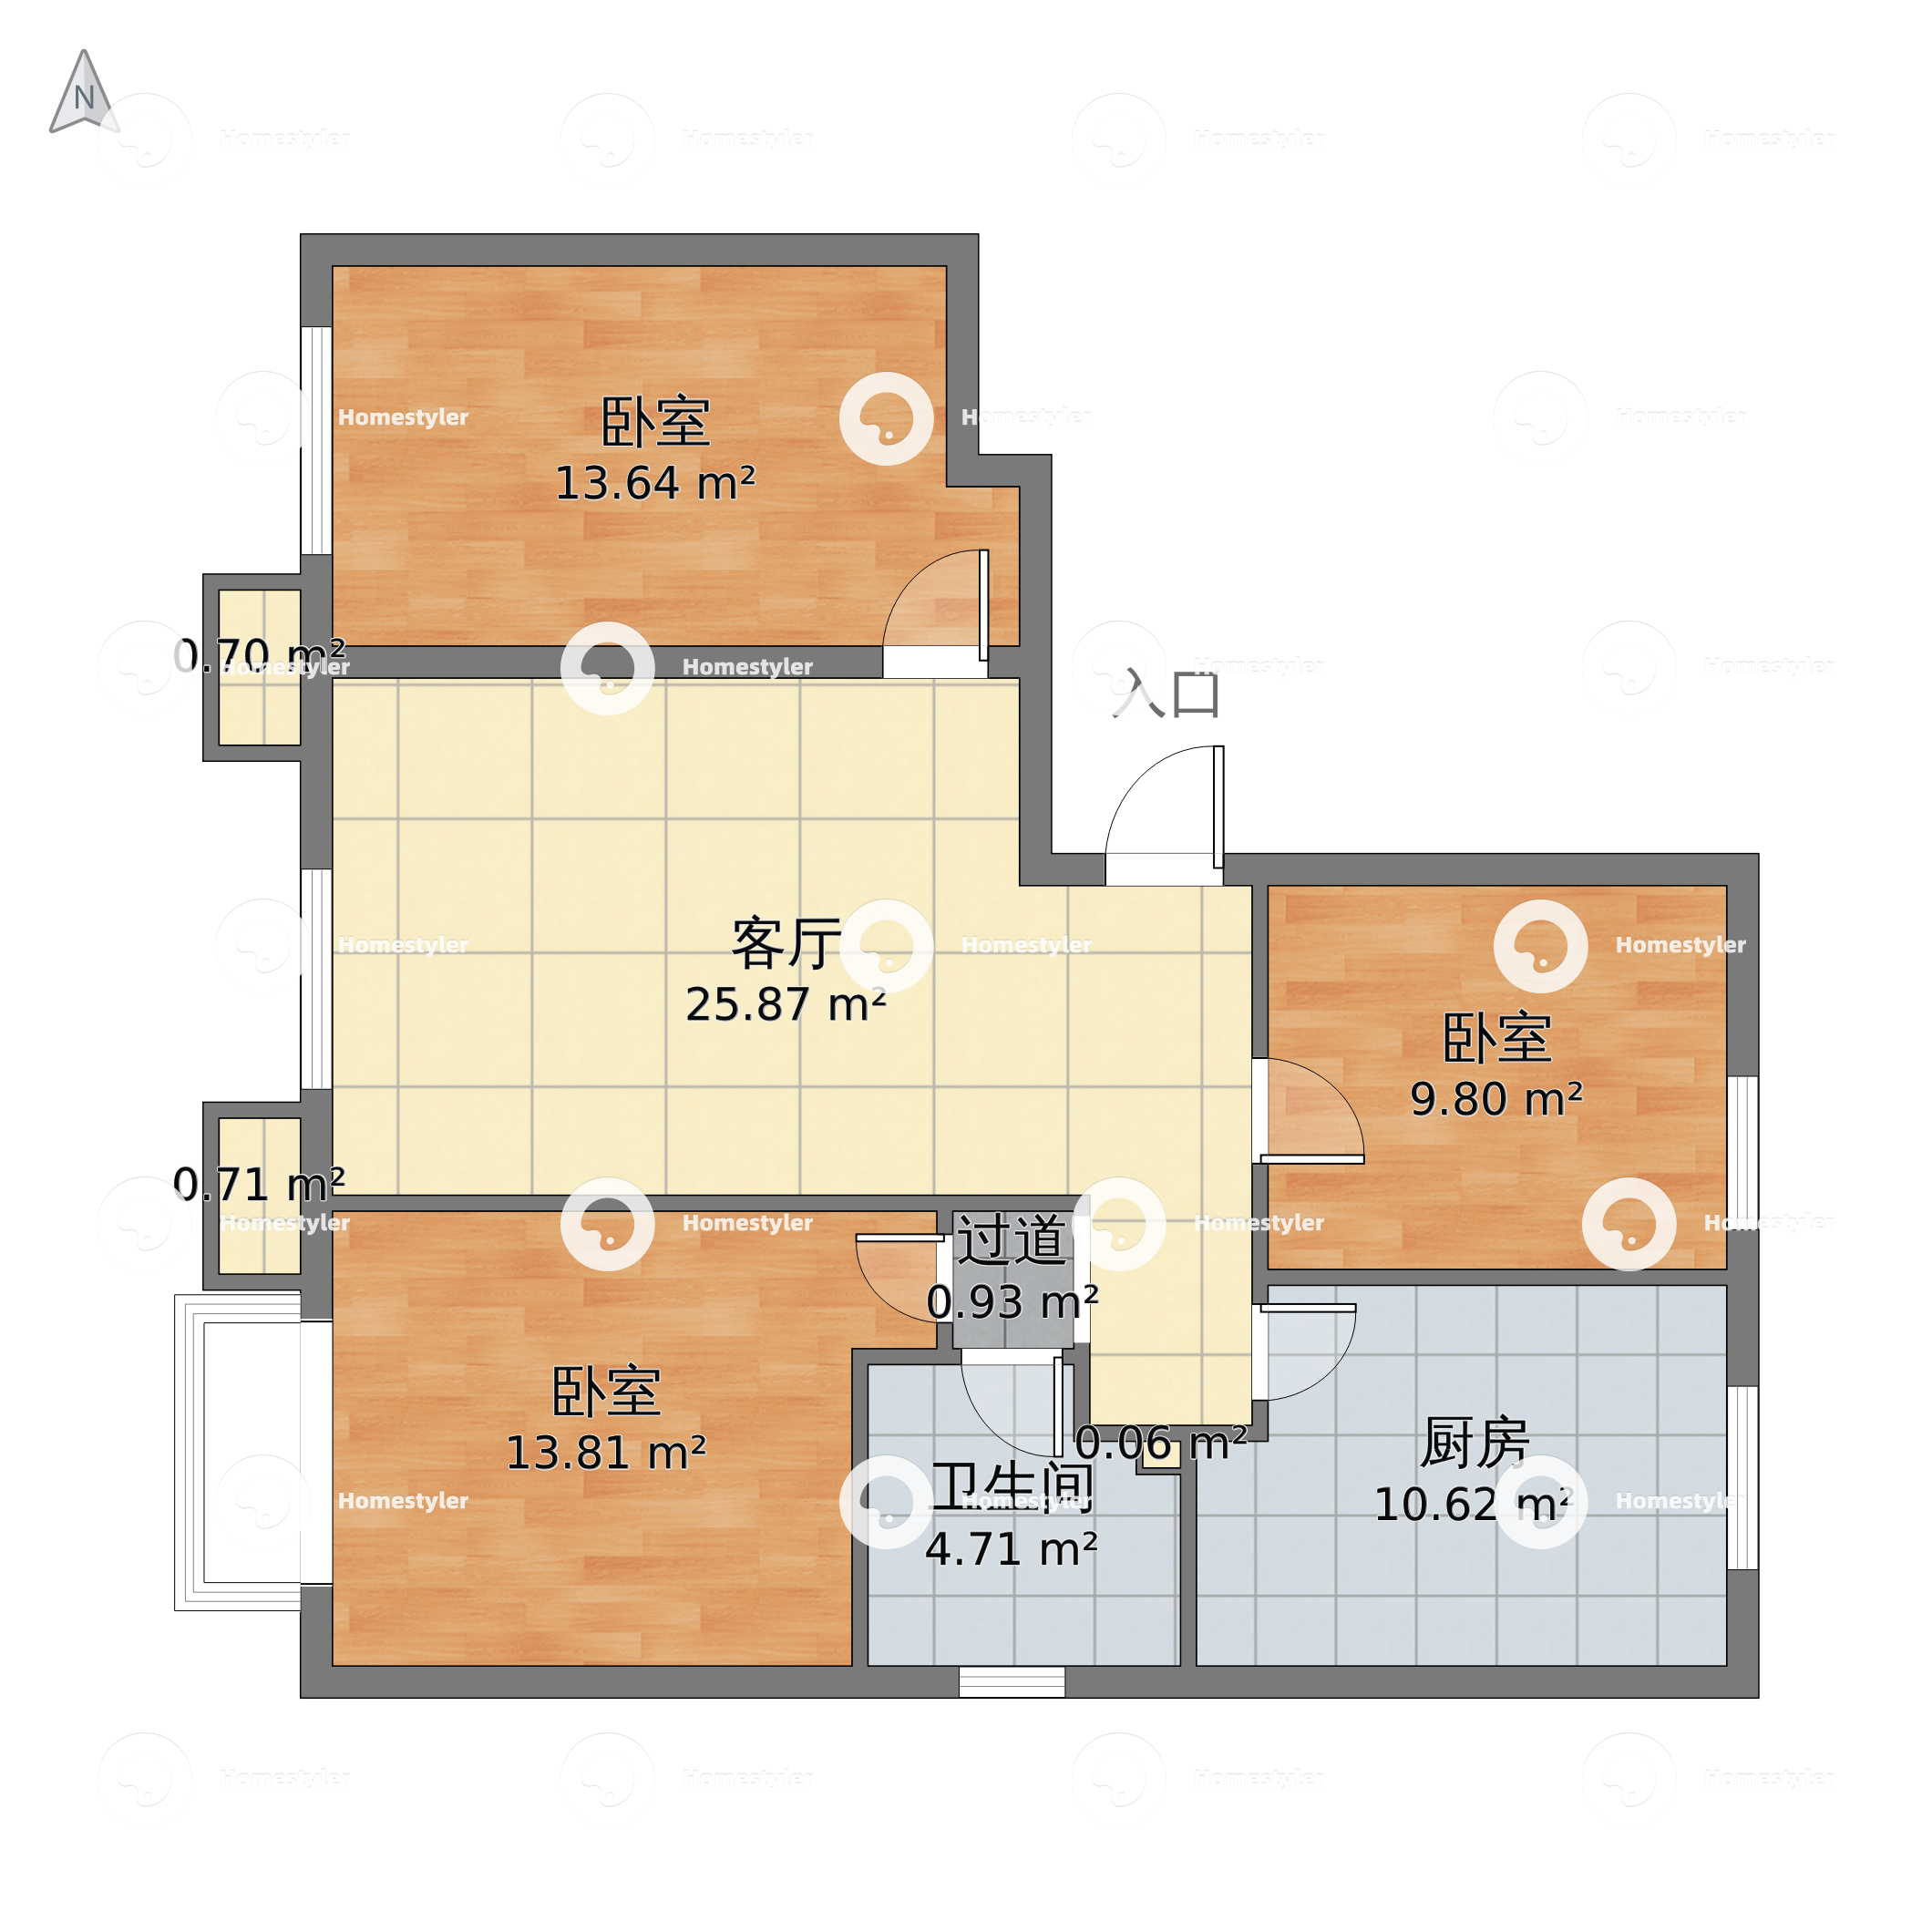 北京市朝阳区 幸福家园 1室1厅1卫 72m²-v2户型图 - 小区户型图 -躺平设计家